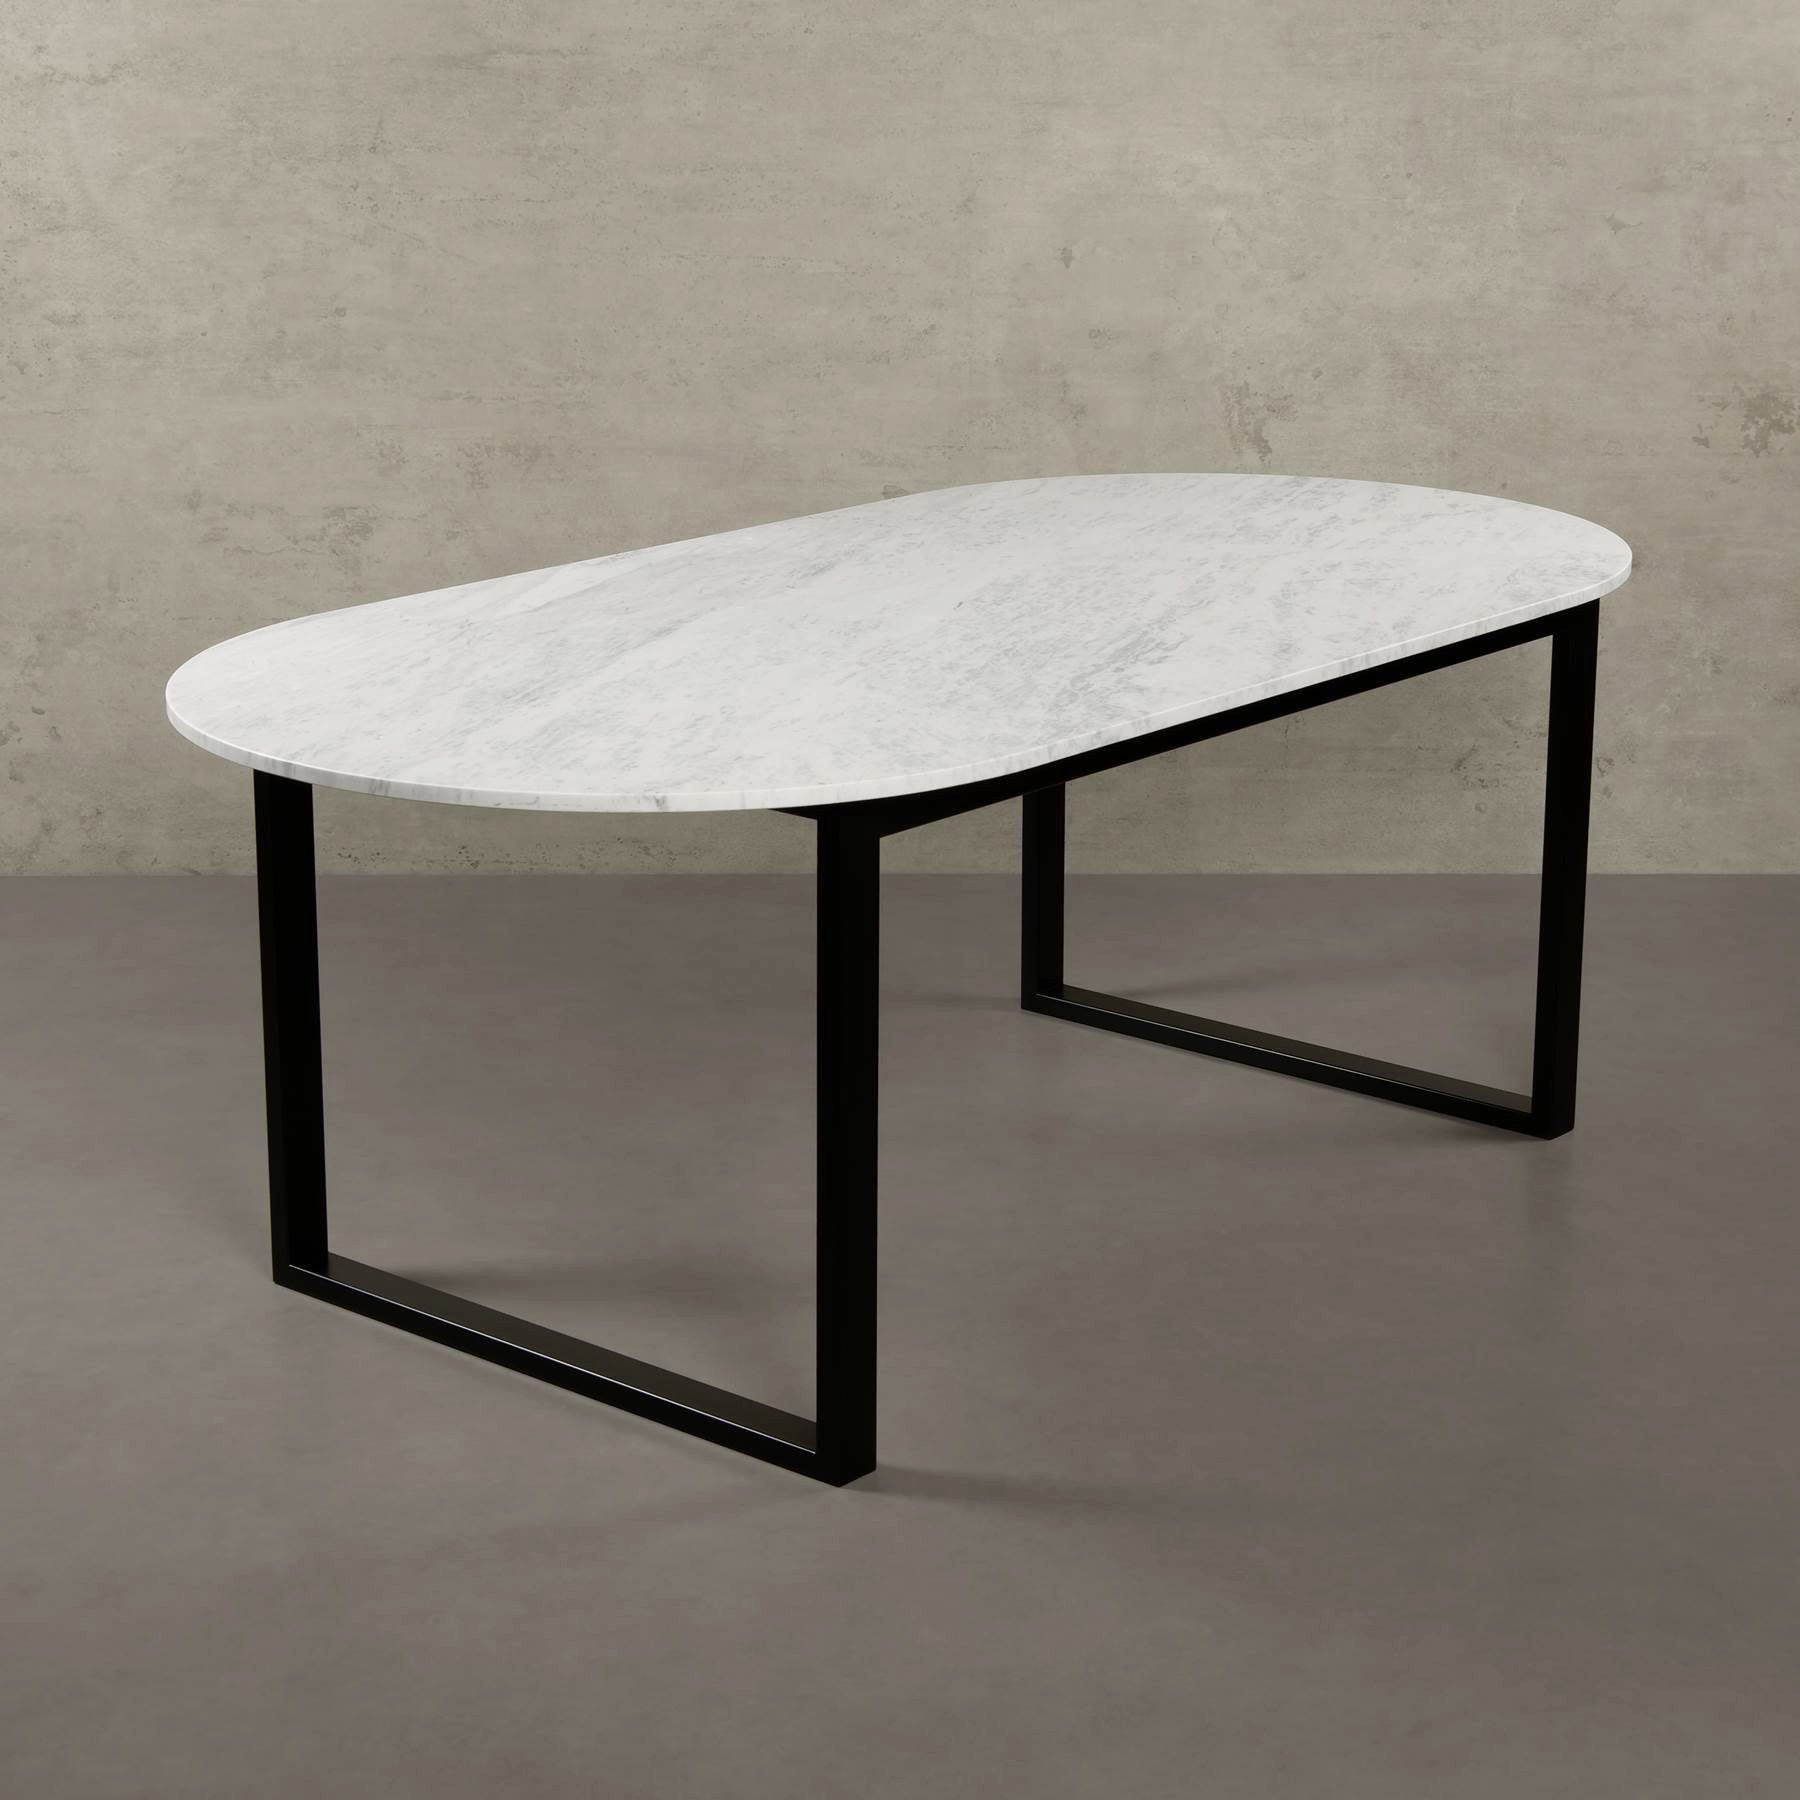 MAGNA Atelier Esstisch BERGEN OVAL mit Marmor Tischplatte, Garten Esstisch für den Aussenbereich, Metallgestell, 200x100x75cm